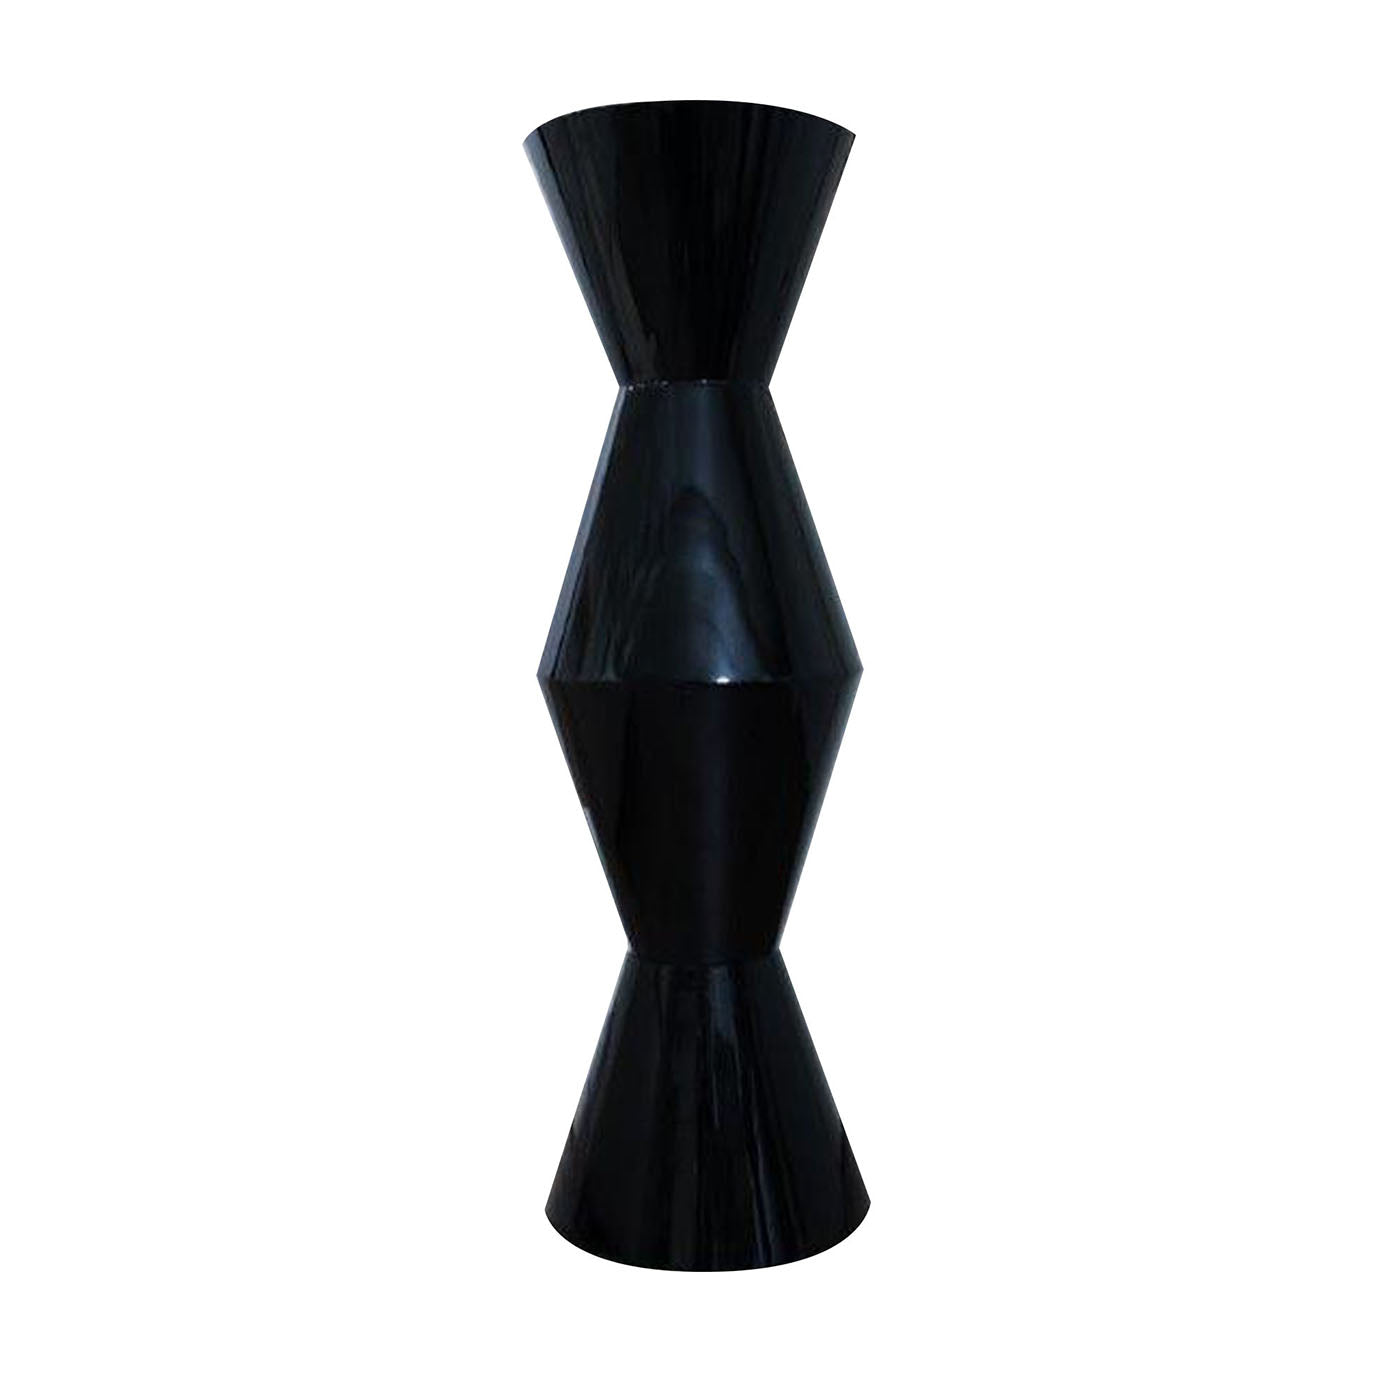 FoRMA Schwarze Poliedro-Vase von Simone Micheli - Hauptansicht